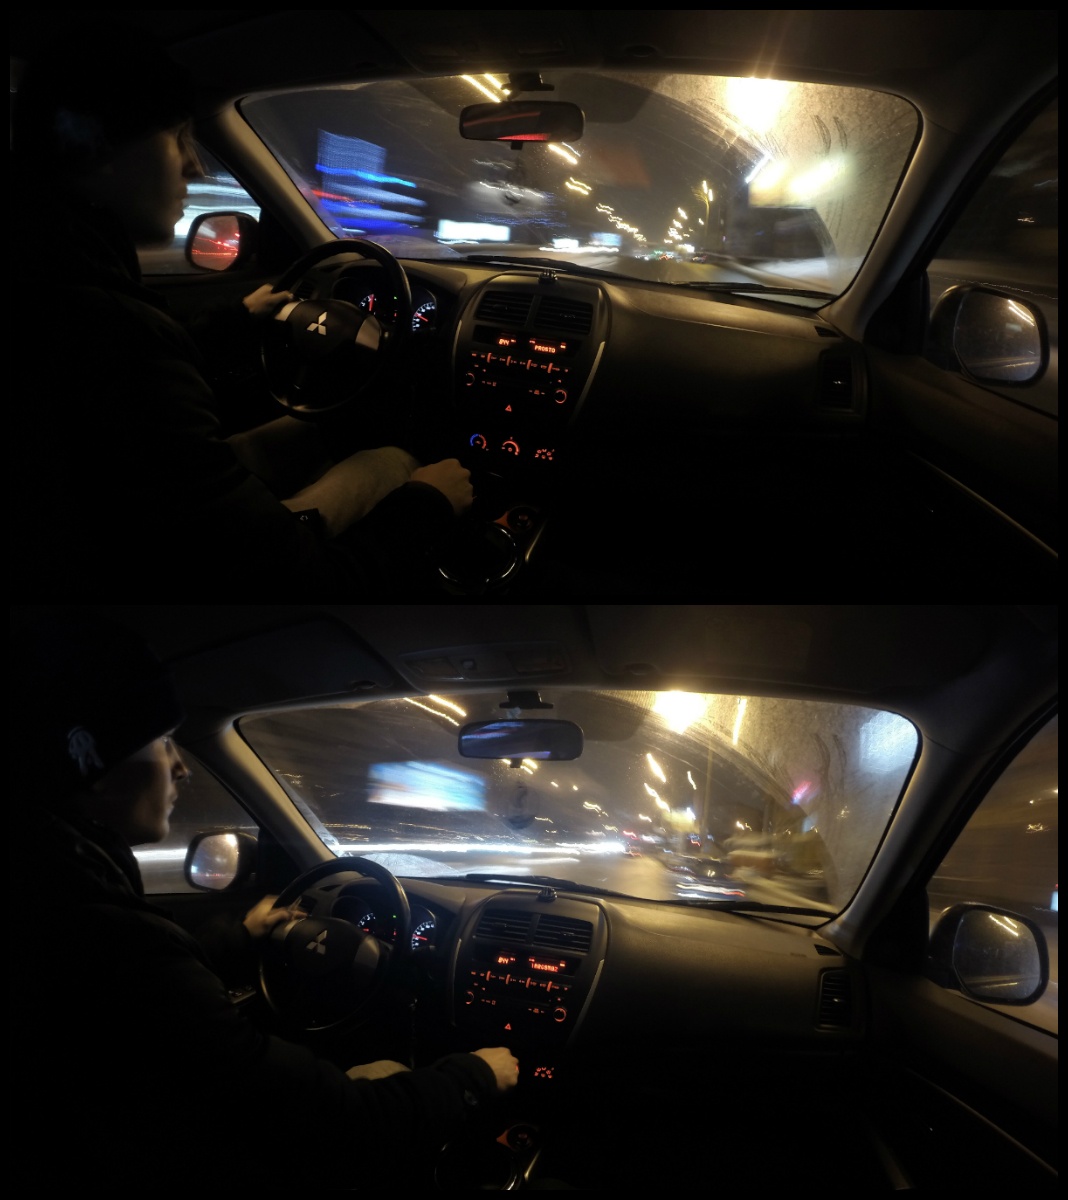 GoPro Hero 3-3+ Black Time-lapsе фотосъемка с ручной настройкой выдержки и экспозиции - 4